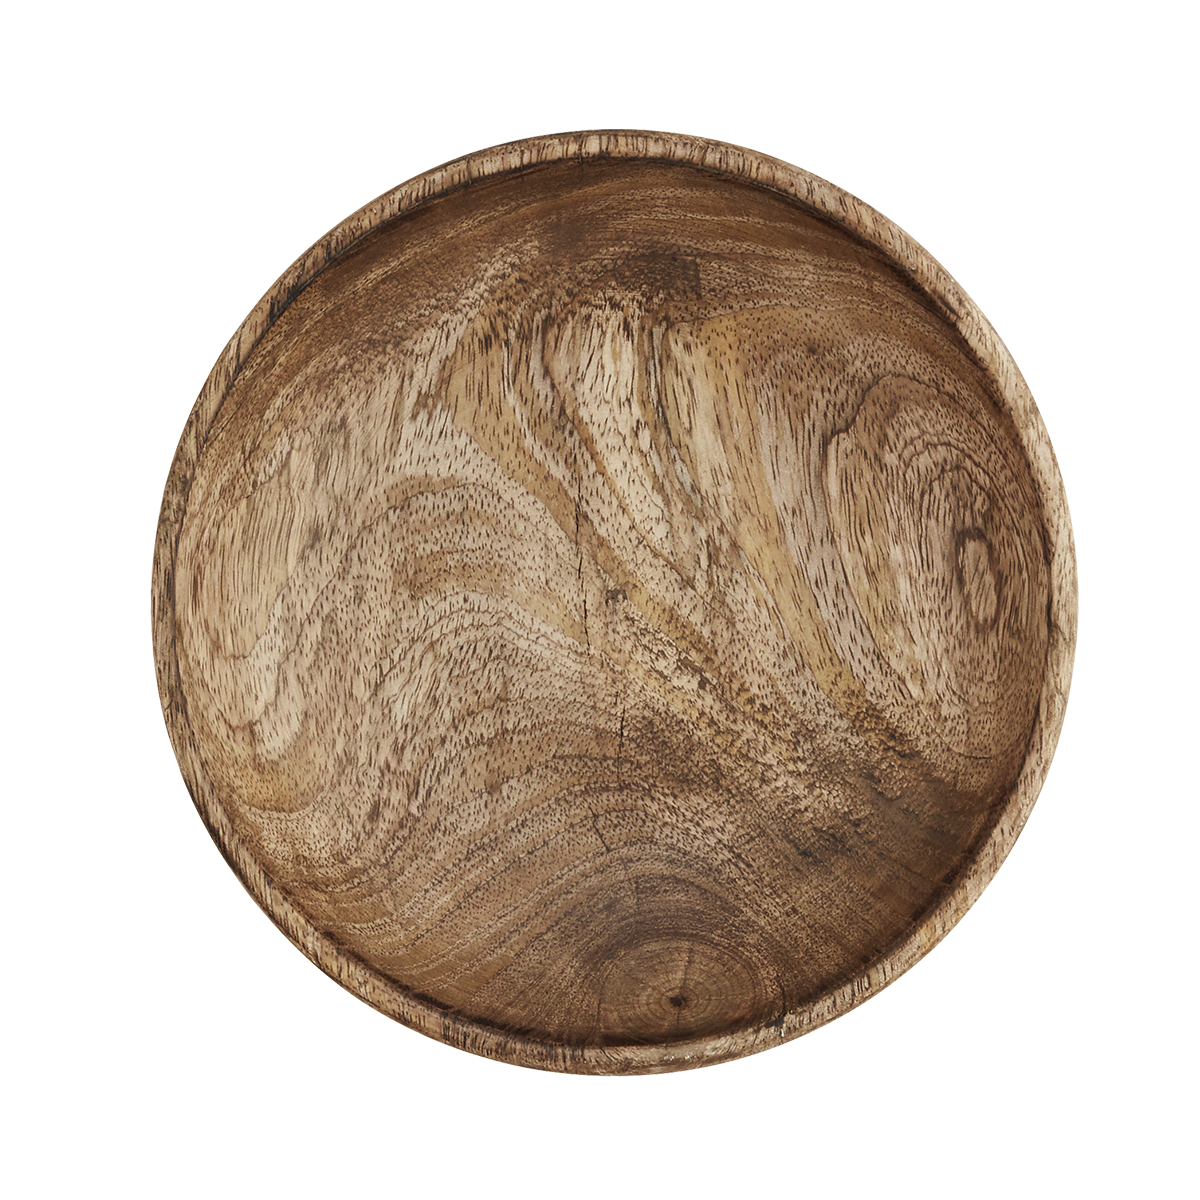 Deep wooden plate